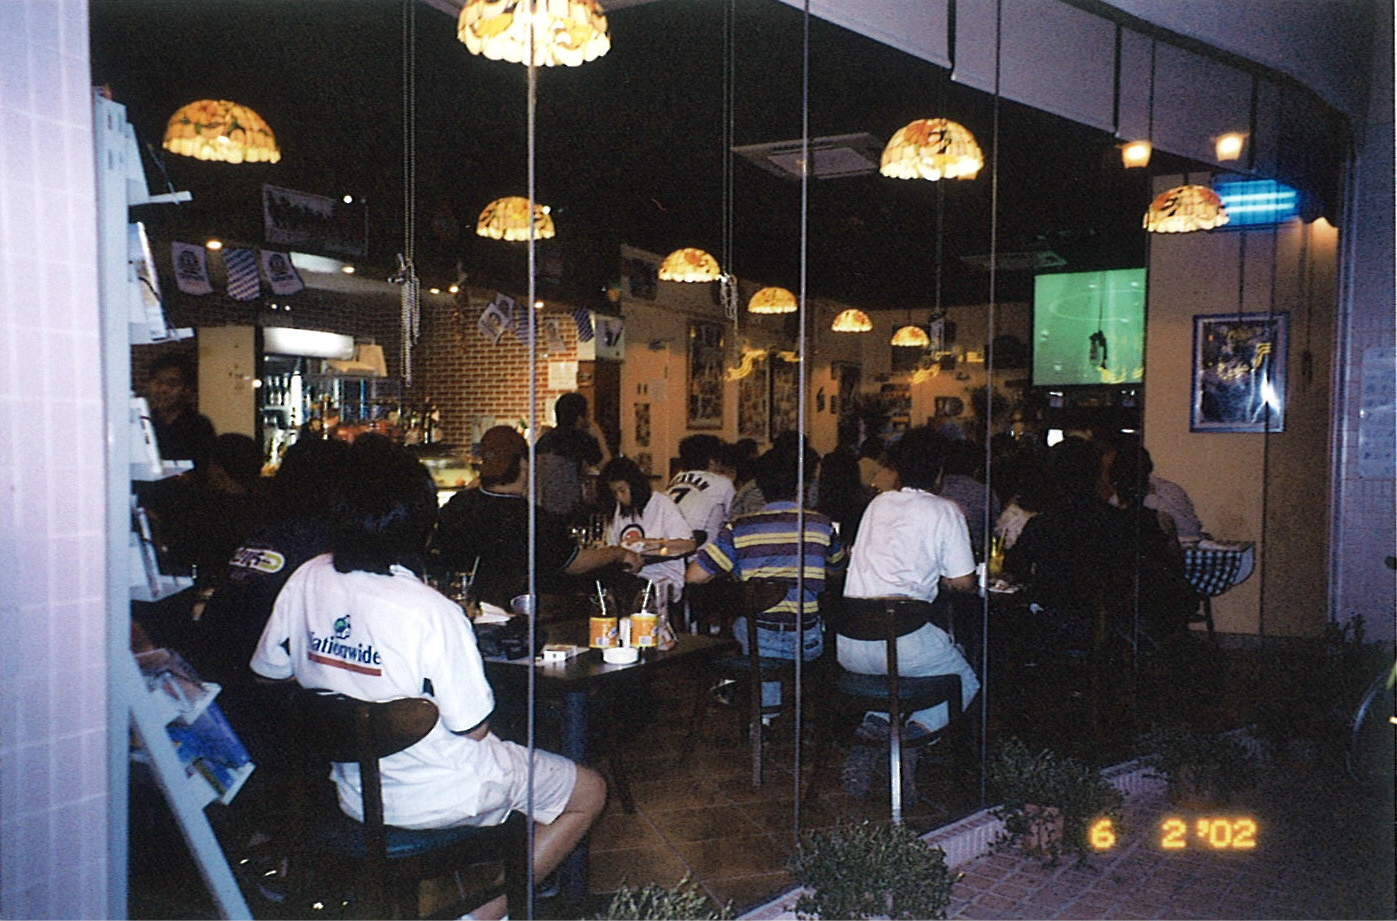 Interior of Cosmo Café located in Marina Cove, Sai Kung.